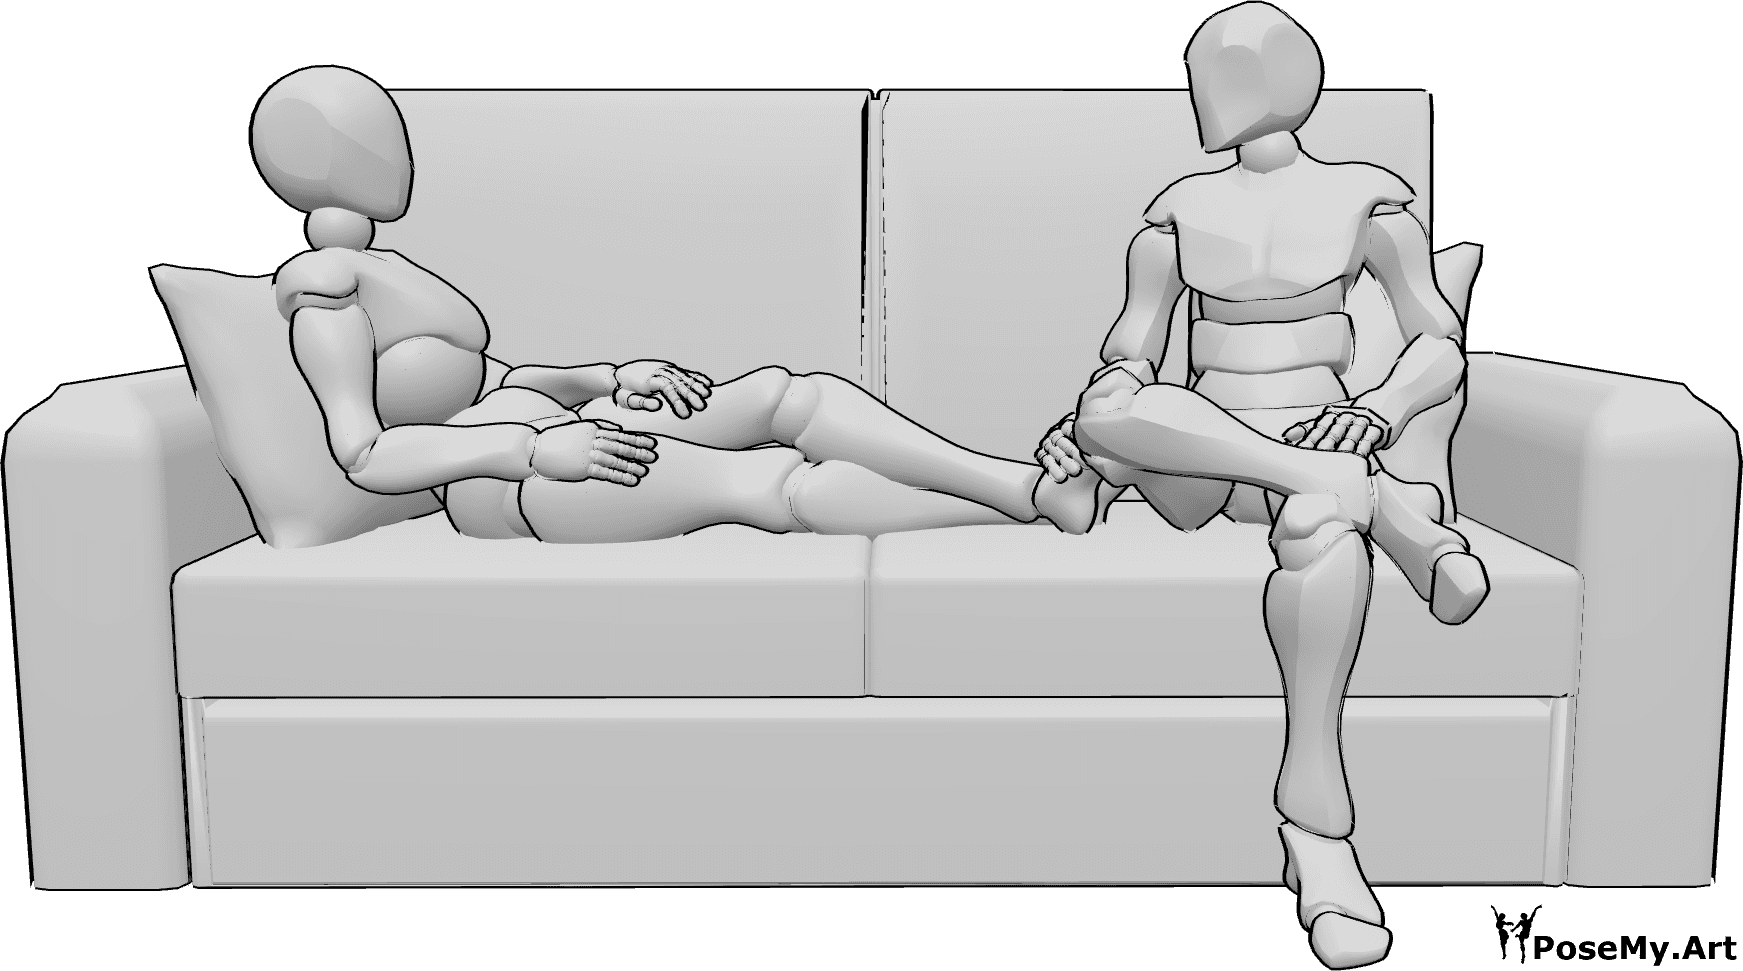 Riferimento alle pose- Posa seduta femminile maschile - La femmina è sdraiata sul divano, il maschio è seduto accanto a lei e si guardano l'un l'altro.